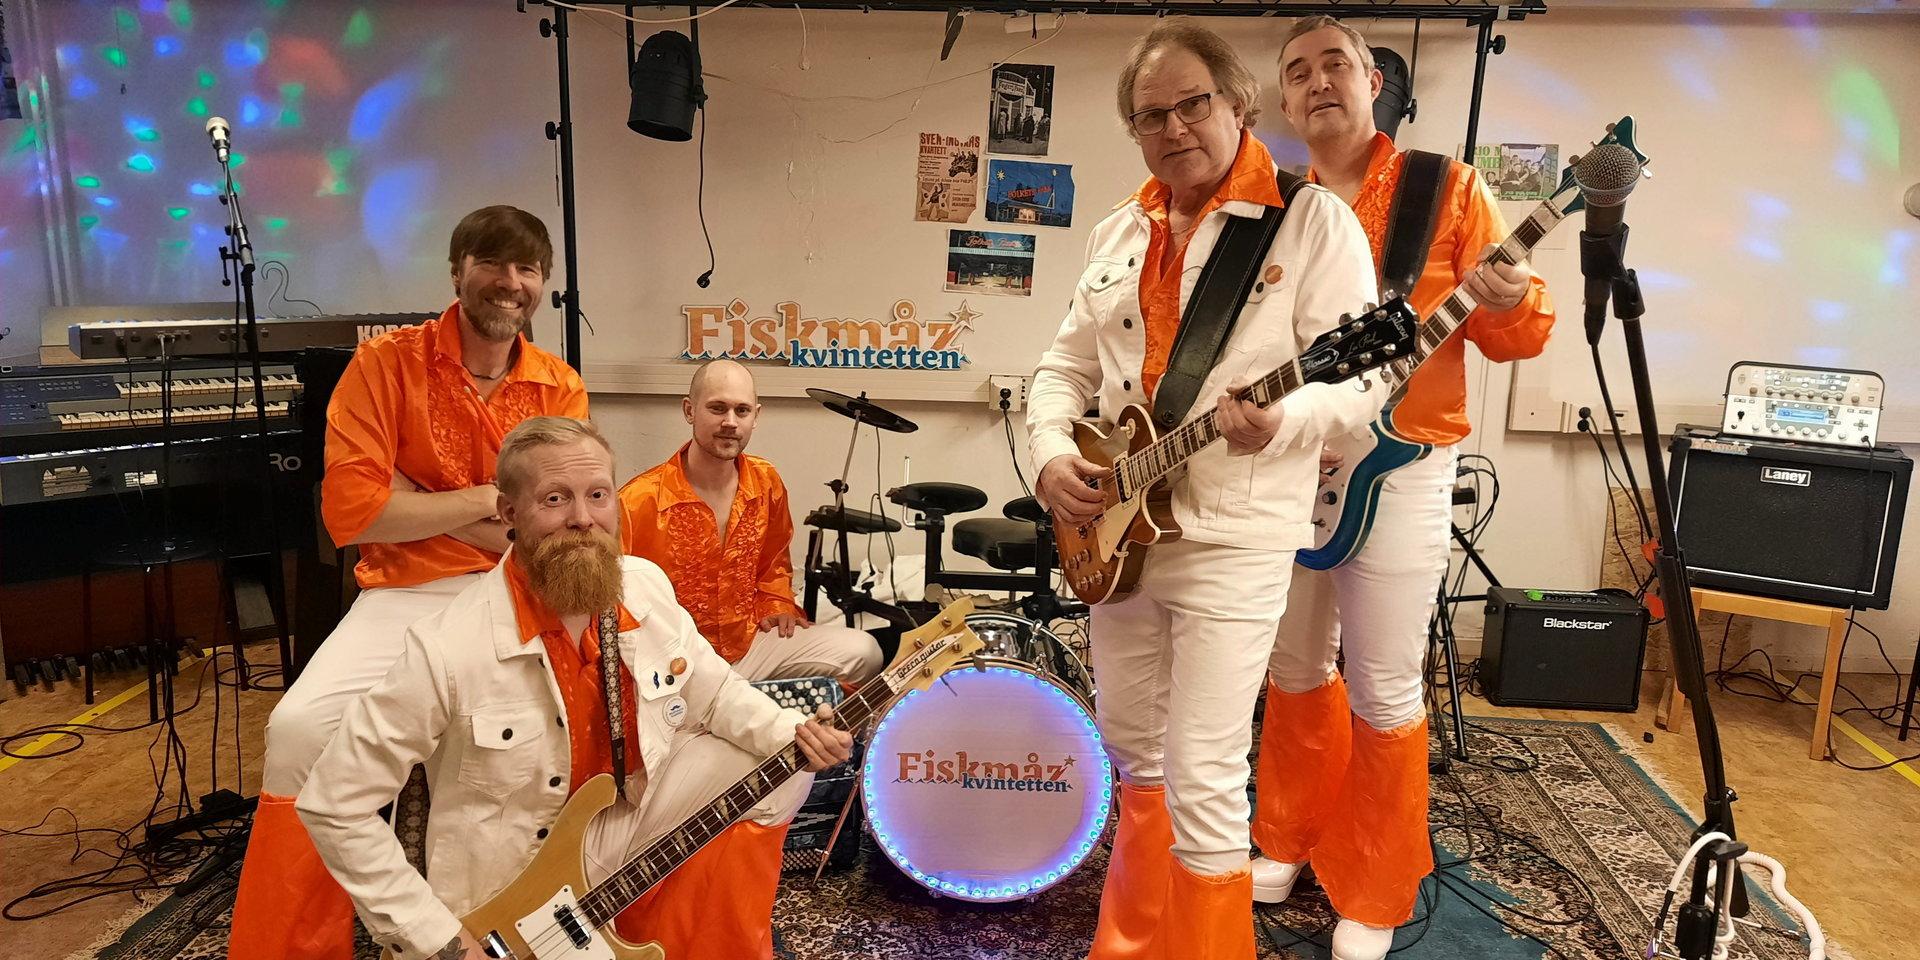 Bakre raden från vänster: Max Krook (trummor), Tobias Persson (klaviatur), Krister Svahn (gitarr). Främre raden från vänster: Henrik Fransson (basgitarr), Johnny Johansson (sång och gitarr).